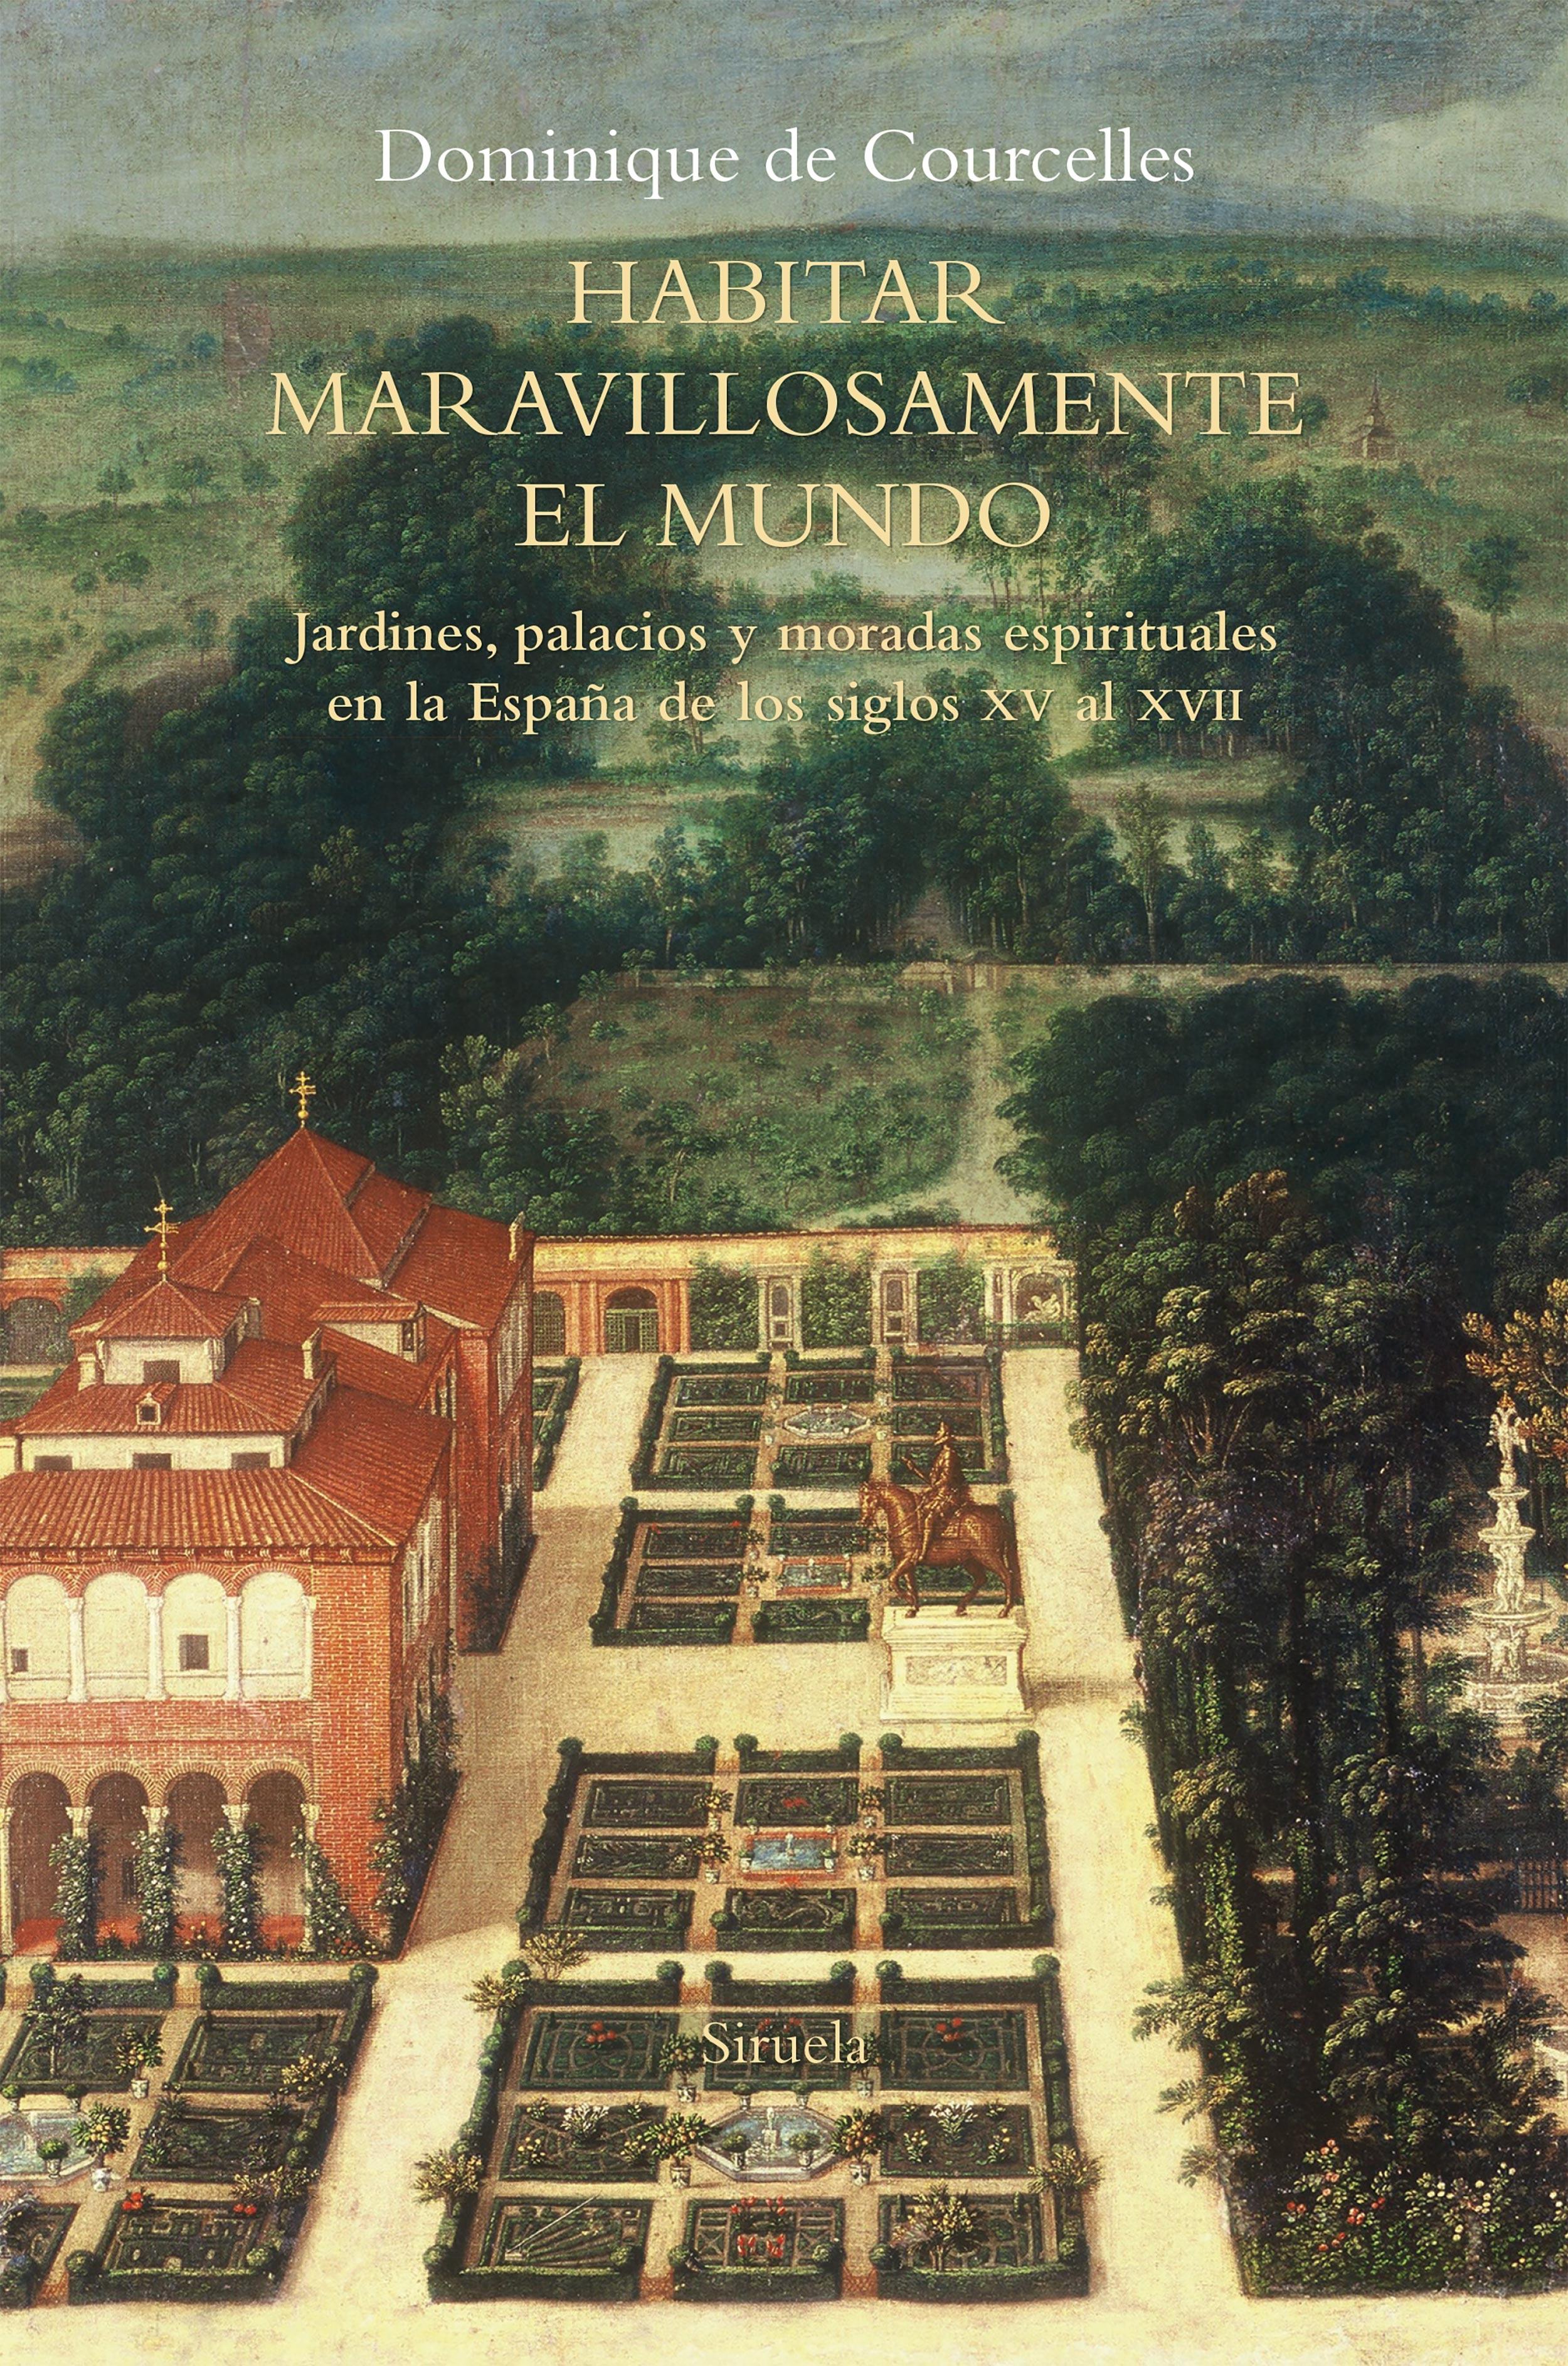 Habitar maravillosamente el mundo "Jardines, palacios y moradas espirituales en la España de los siglos XV al XVII"